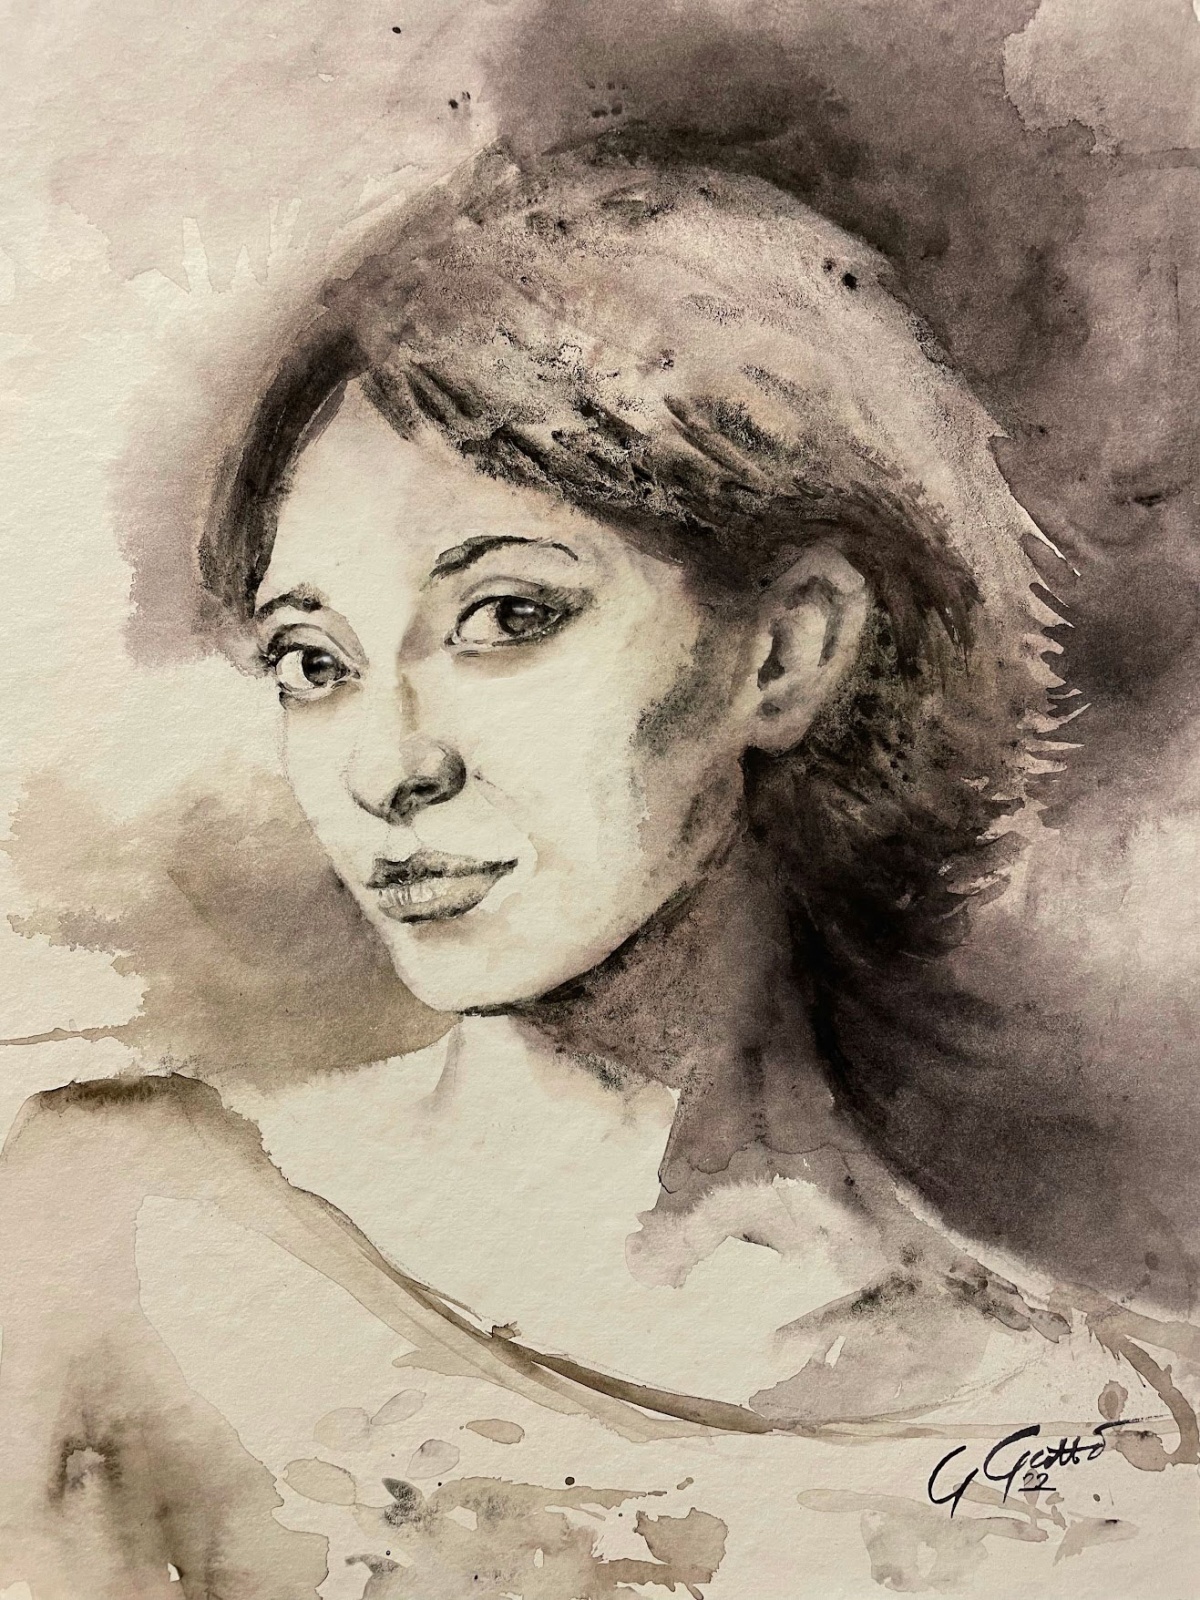 Ritratto di ragazza - monocromo - watercolour on paper
40x30 cm